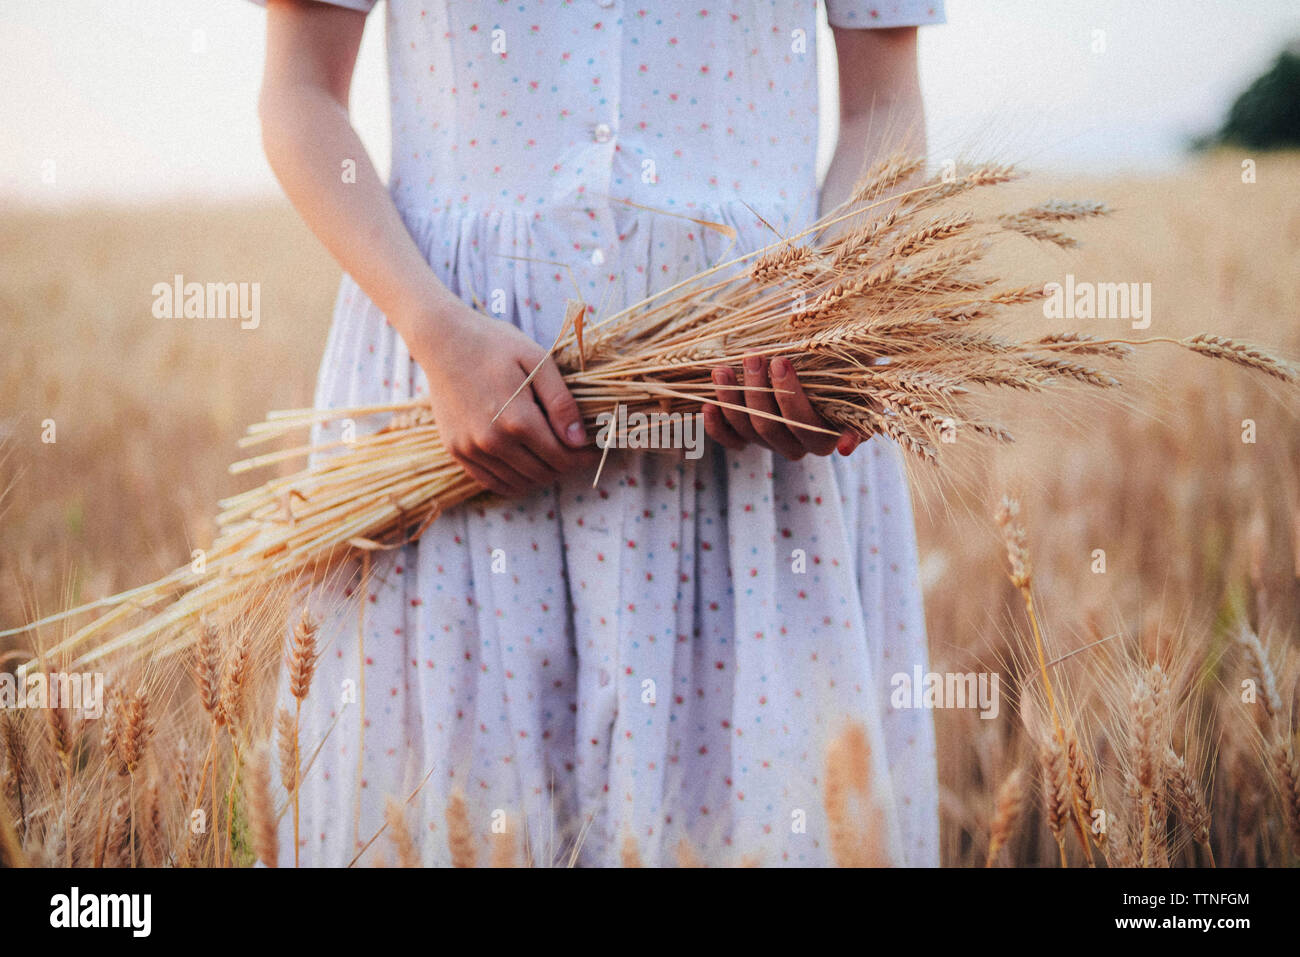 La mitad del torso de mujer sosteniendo los cultivos de trigo estando de pie en el campo contra el cielo Foto de stock